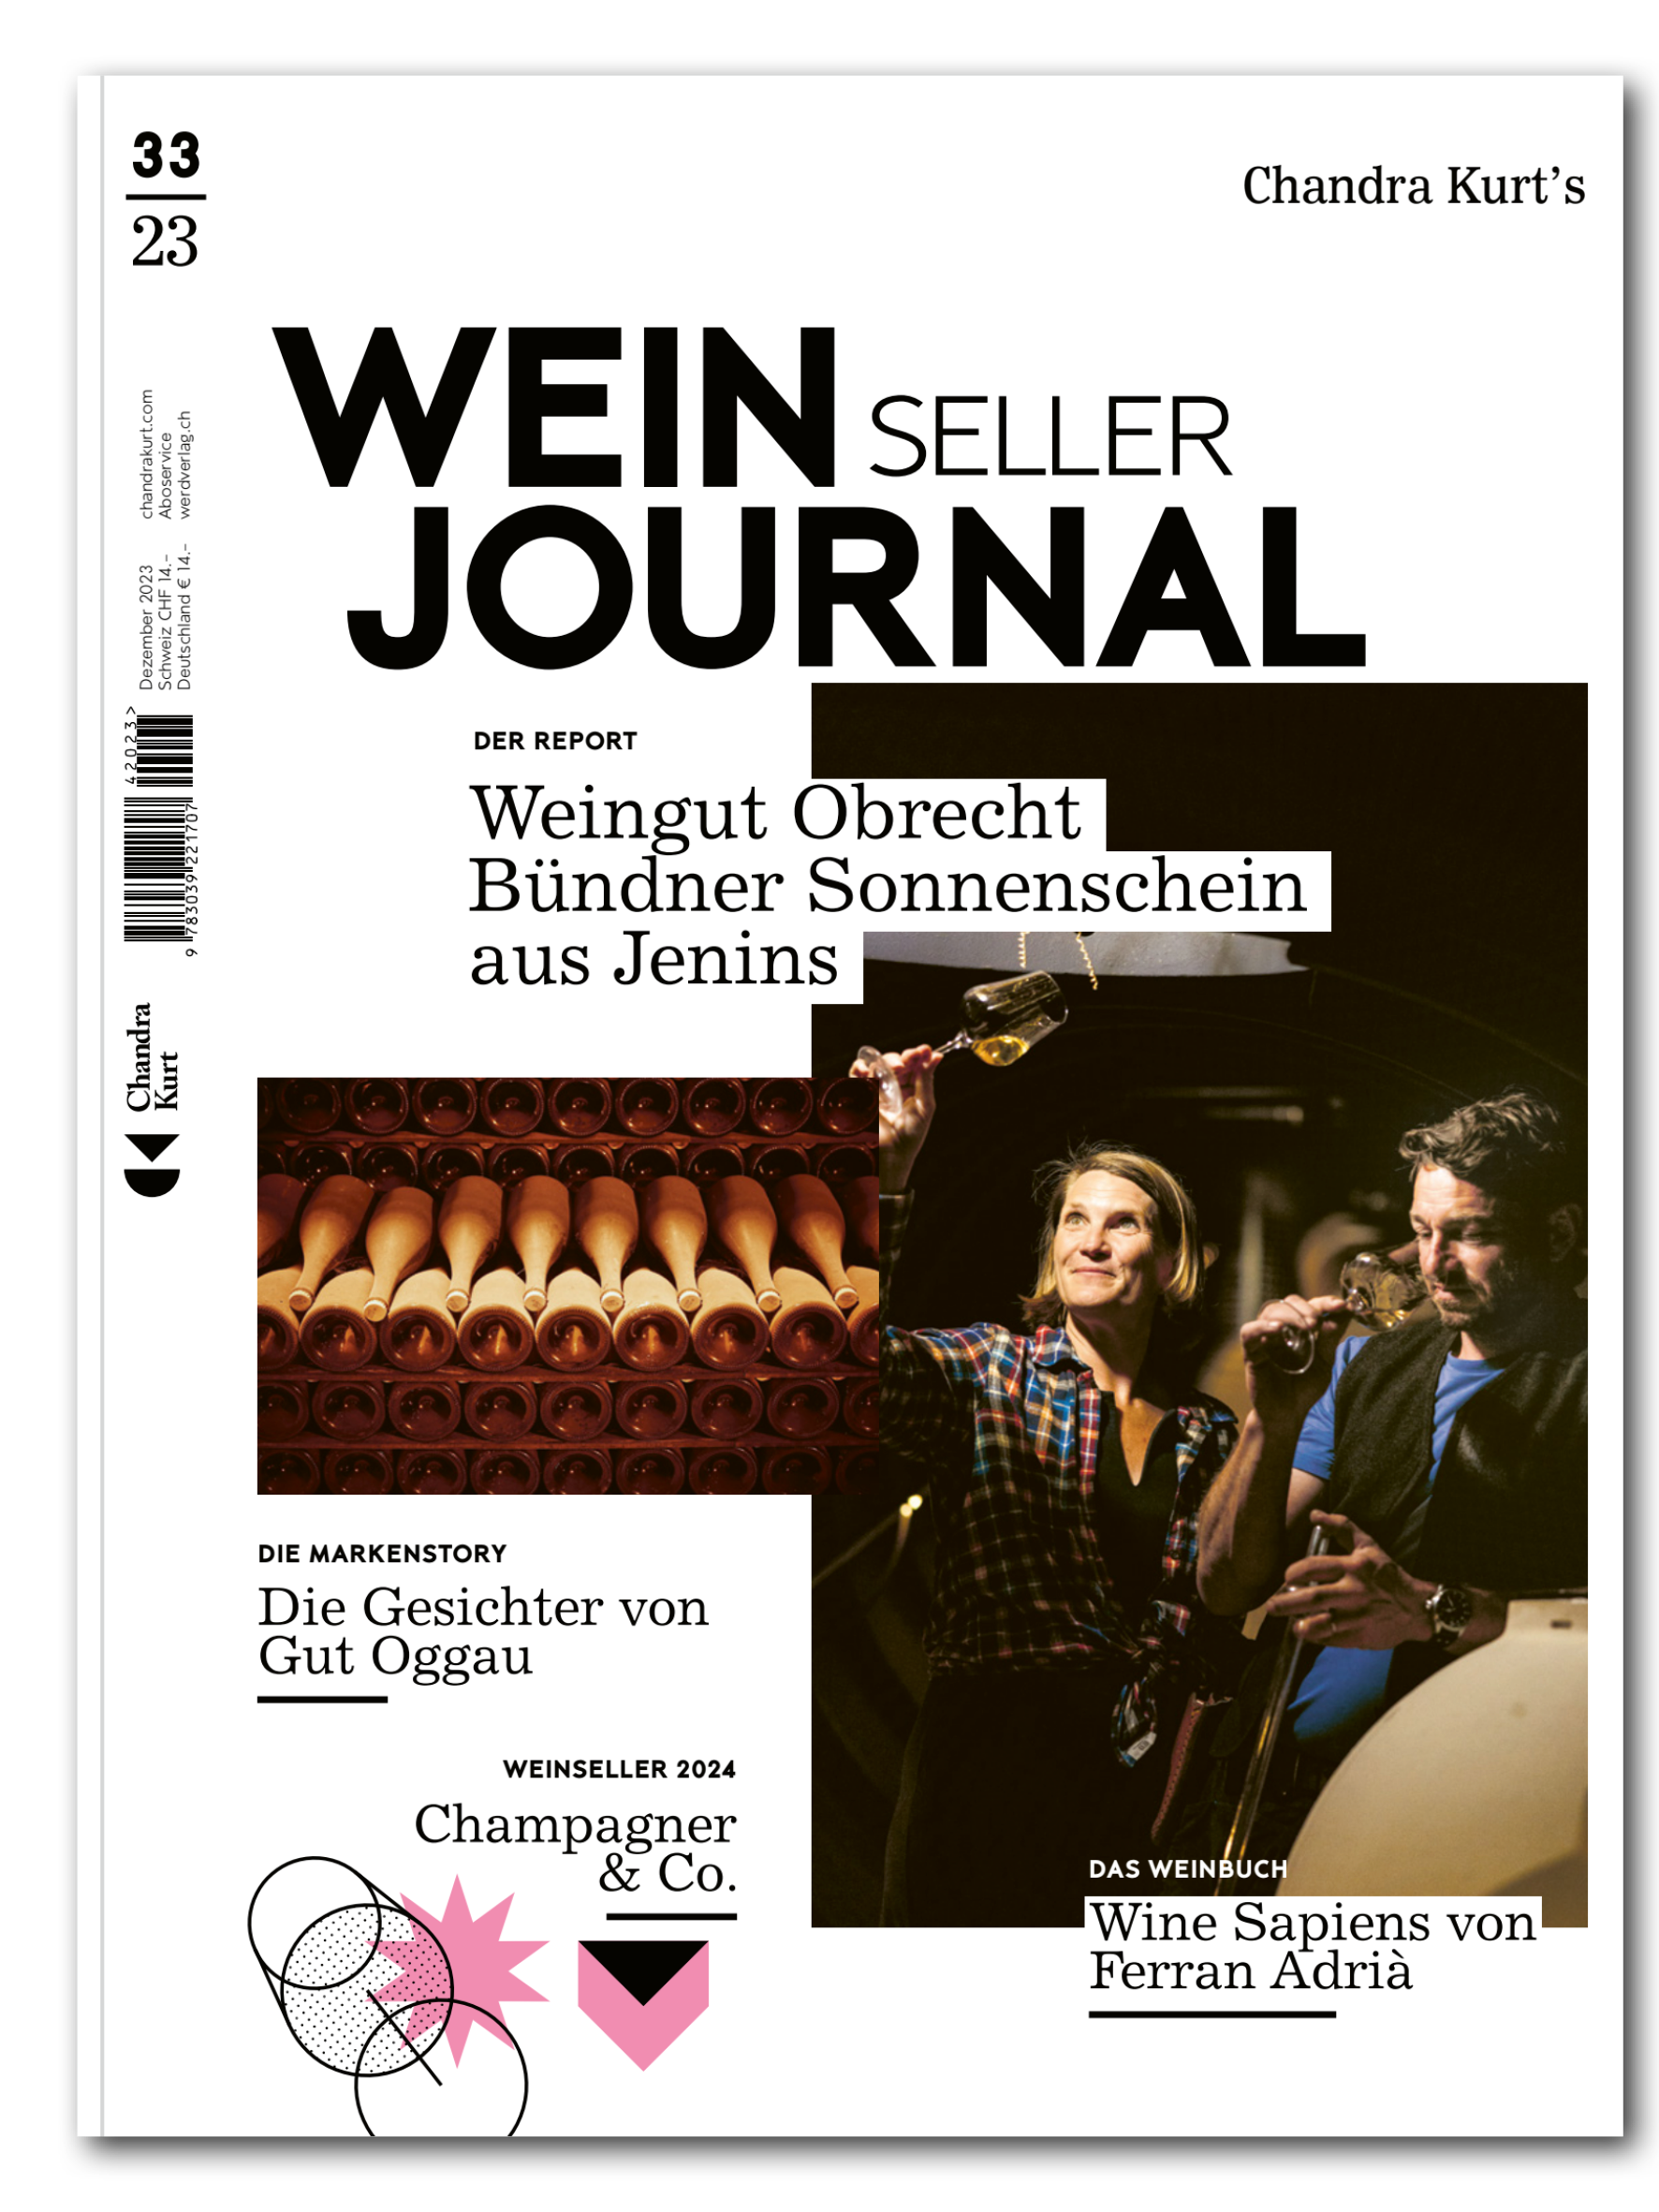 Weinseller Journal – 33/23 - • WEBER VERLAG